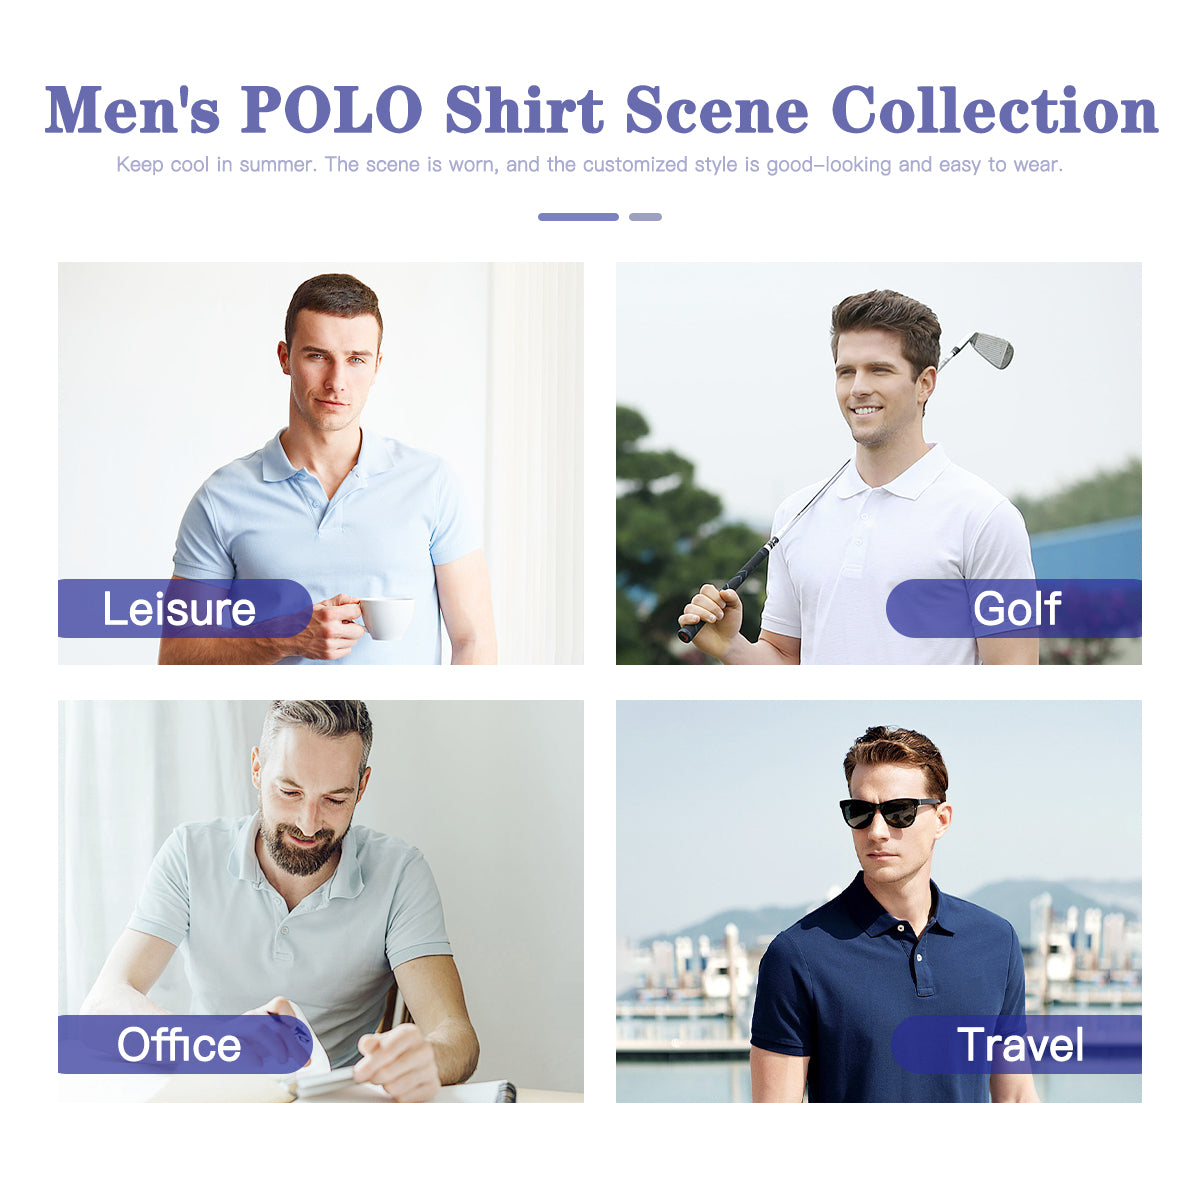 Retro Polo Shirt, Polo Shirt Men, Retro Shirt Men, 70s Shirt Men, 70s Style Shirt, 70s Style polo, Retro Style Shirt, Short Sleeve Shirt Men